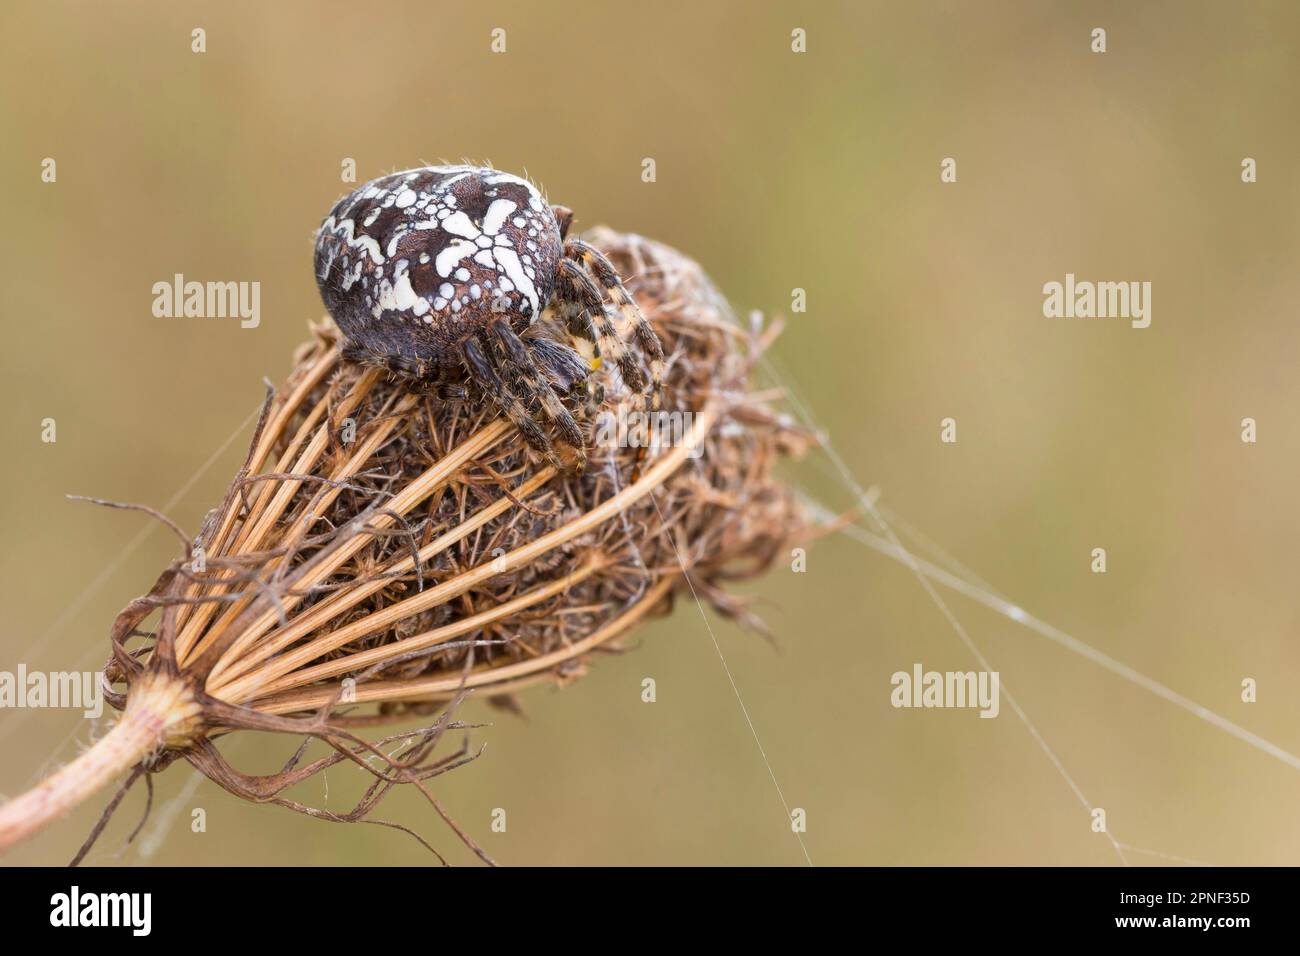 Cross orbweaver, ragno giardino europeo, ragno croce (Araneus diadematus), su un'infarcescenza di carota selvatica, Germania Foto Stock